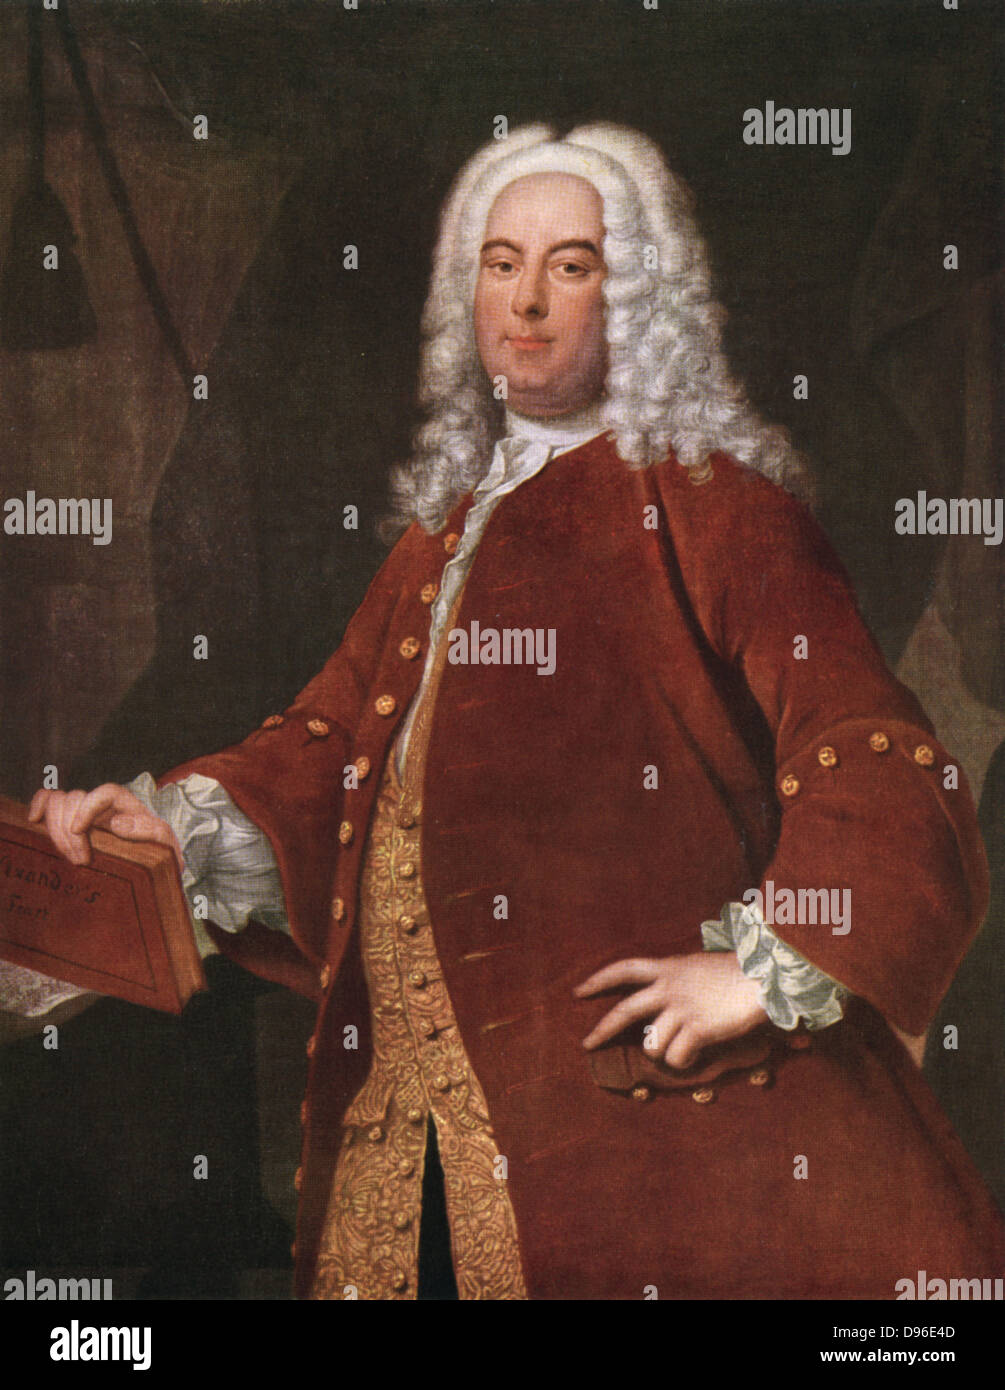 Händel (1685-1759) deutsch-englische Komponist in Halle geboren. Nach dem Porträt von Thomas Hudson. Stockfoto